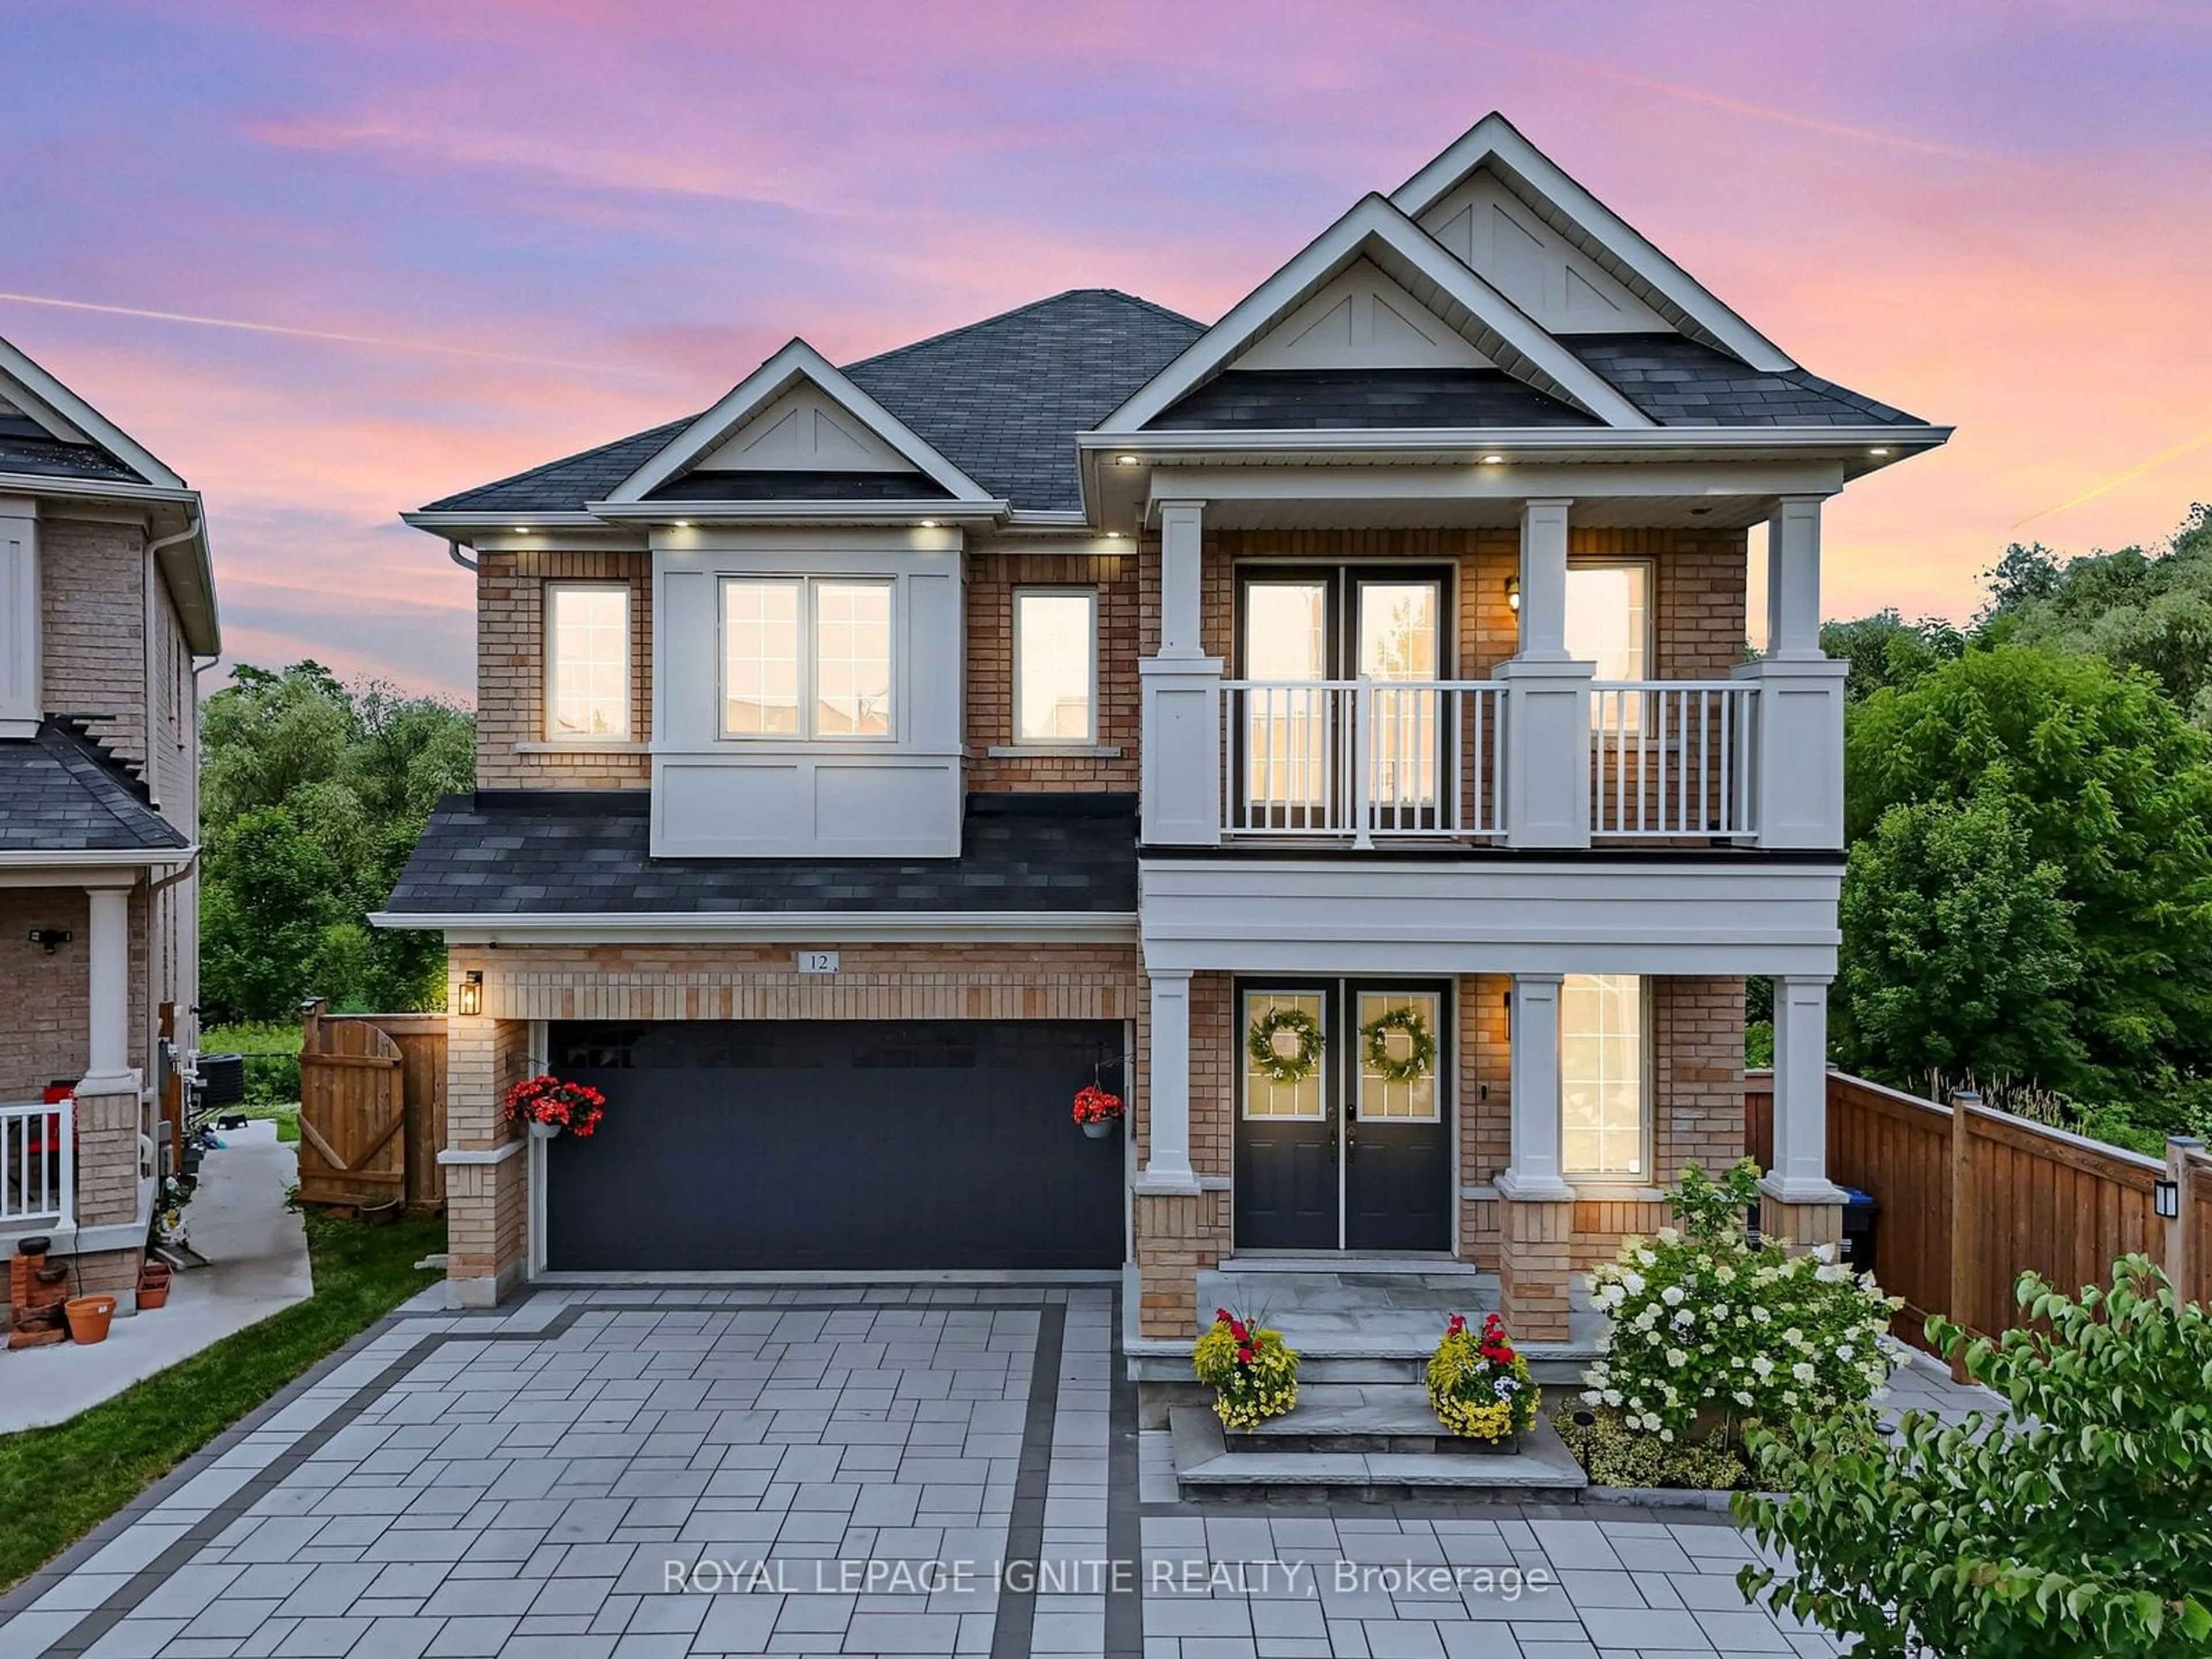 Home with brick exterior material for 12 Ashfield Pl, Brampton Ontario L6Y 5Y7